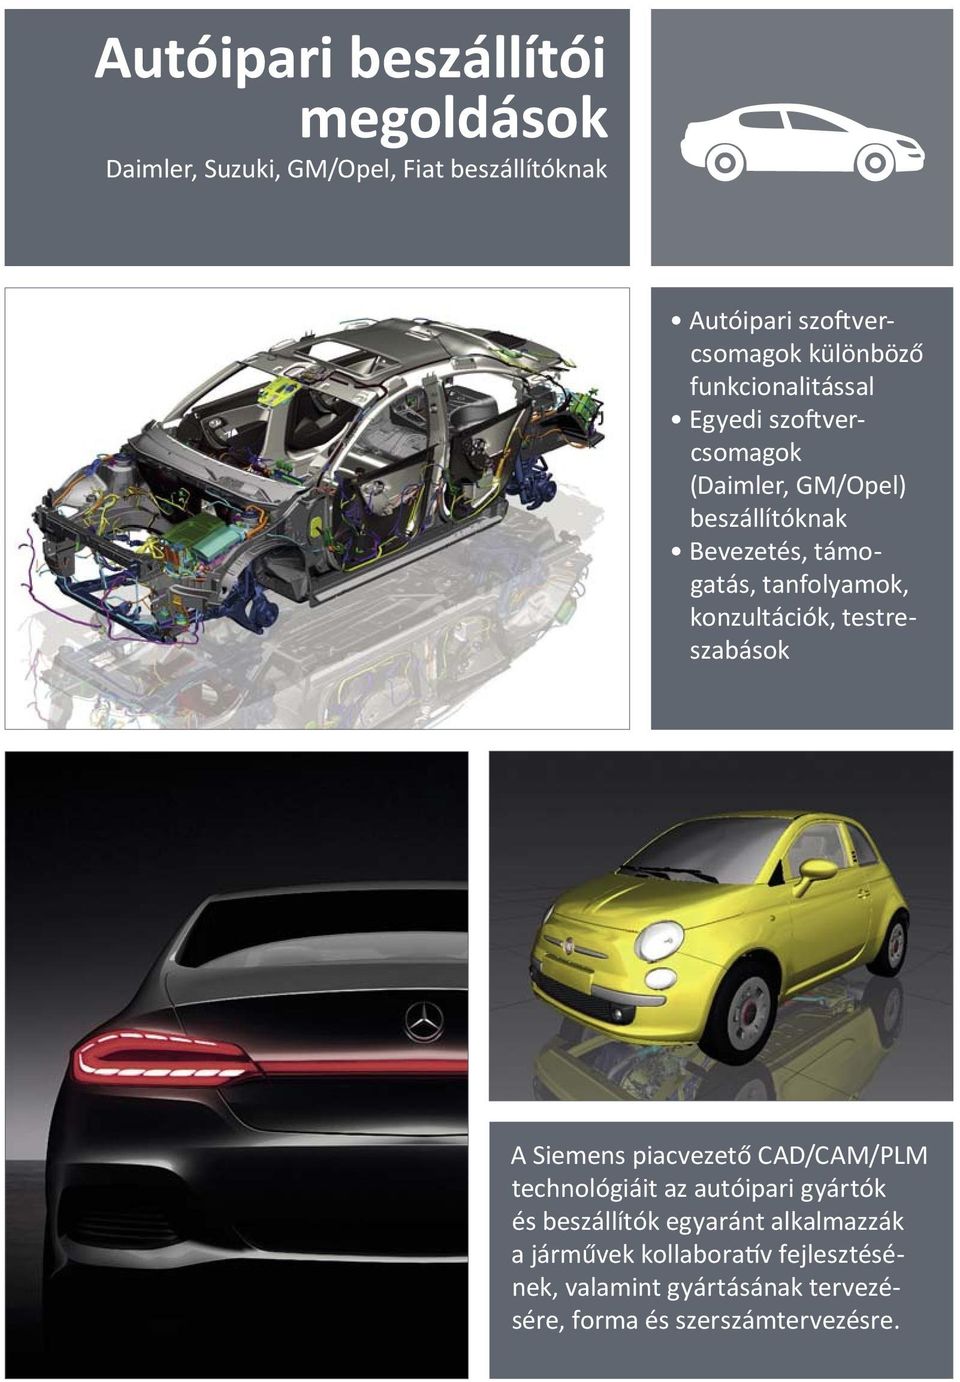 konzultációk, testreszabások A Siemens piacvezető CAD/CAM/PLM technológiáit az autóipari gyártók és beszállítók